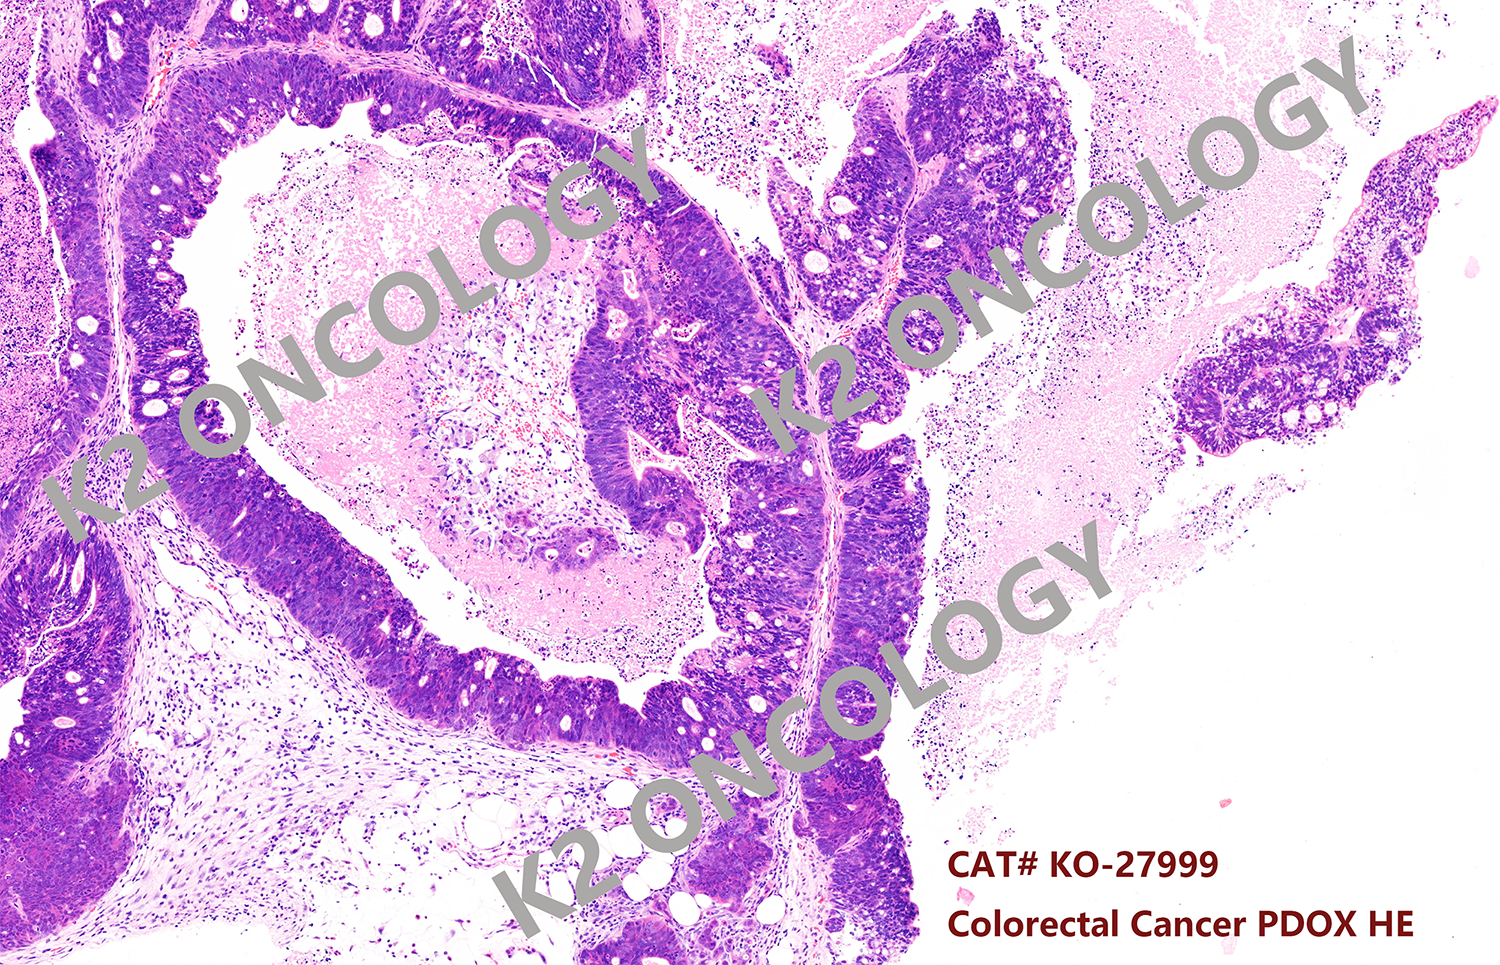 结直肠癌类器官KO-27999 PDOX小鼠模型的典型HE染色照片